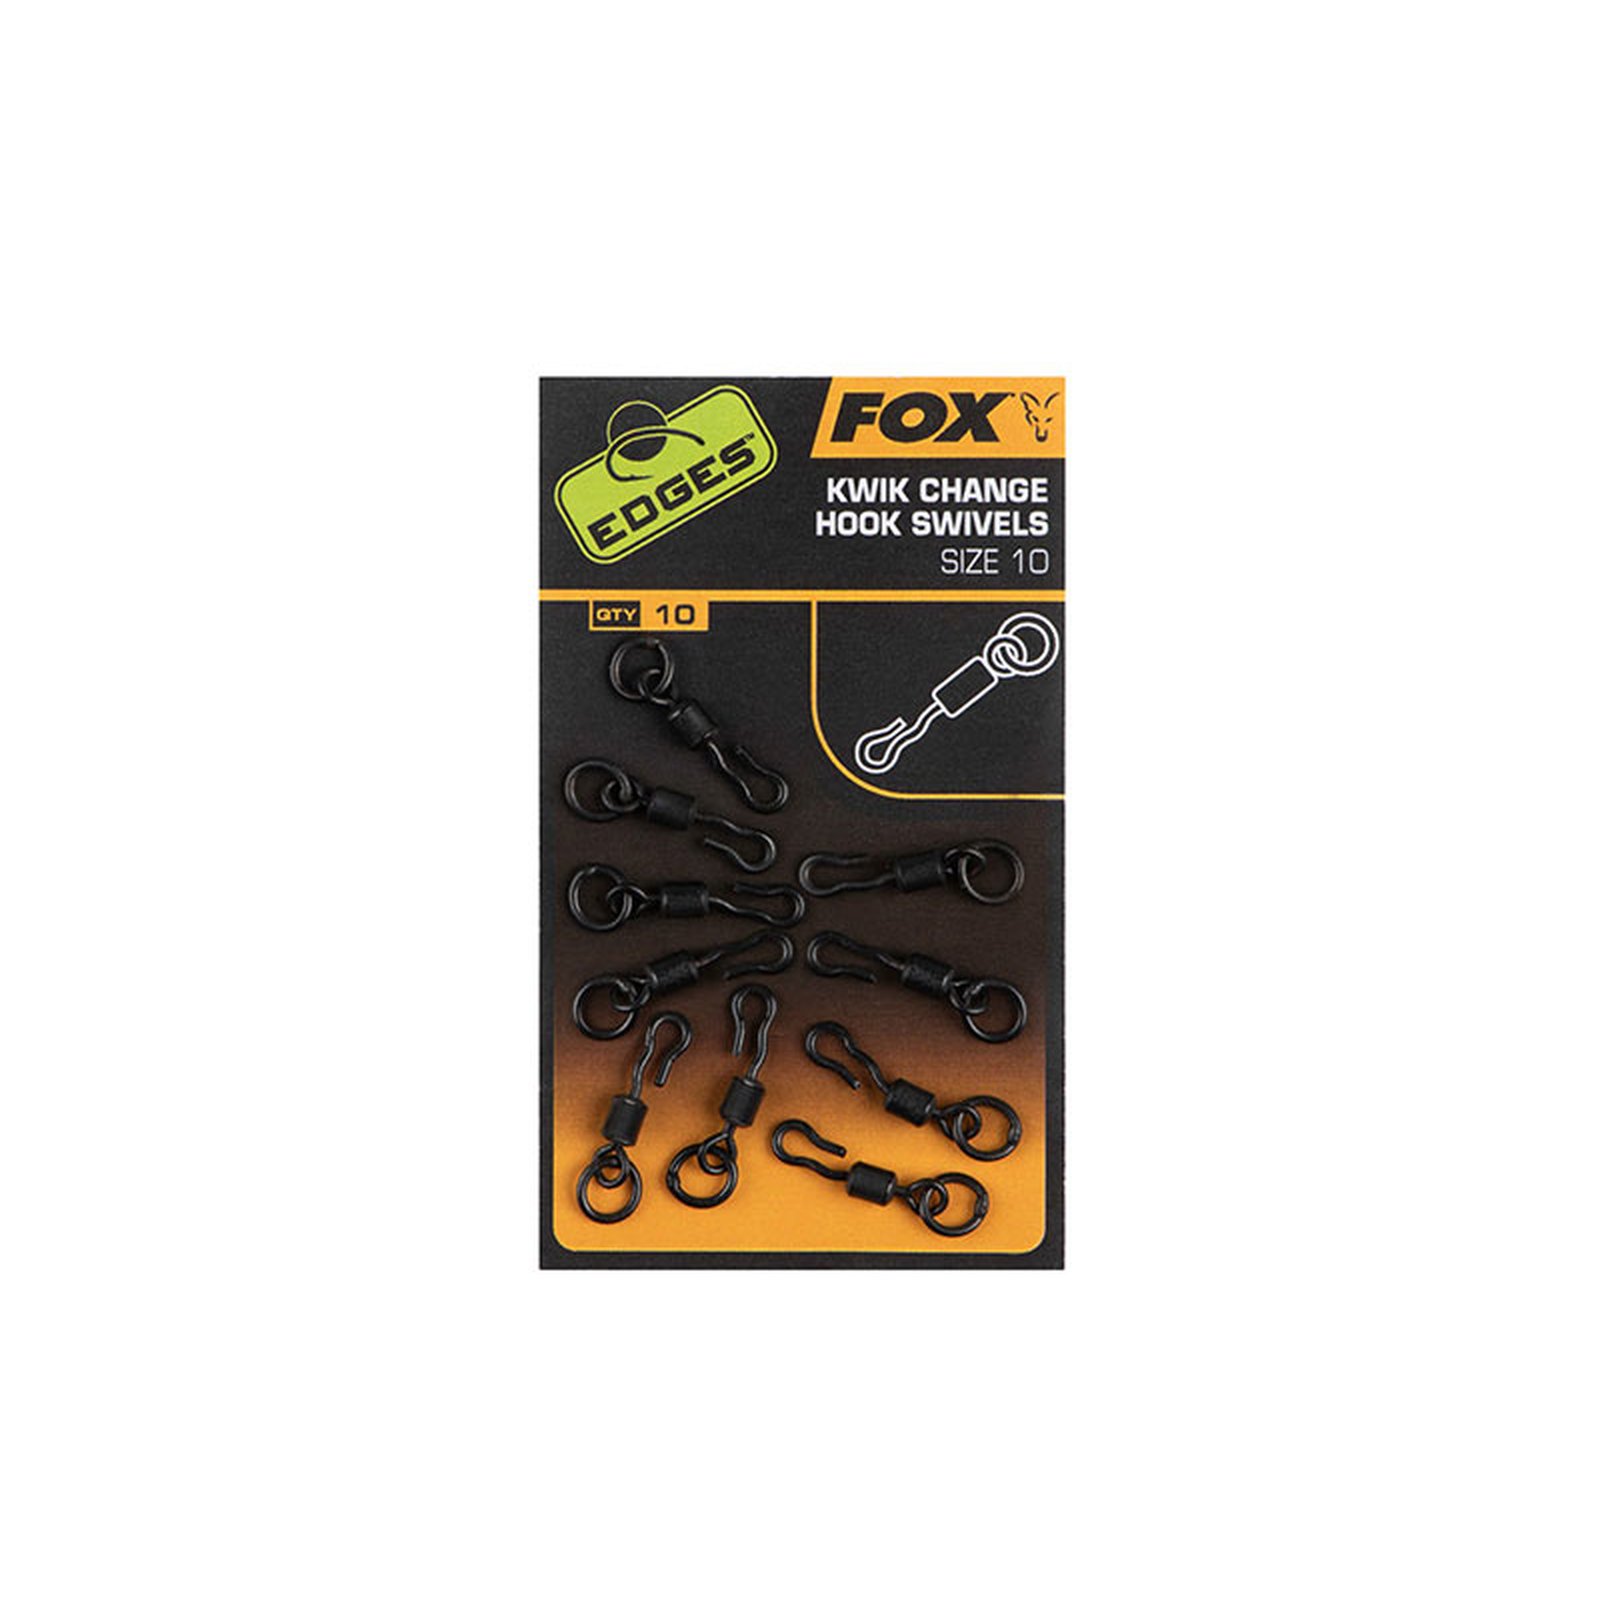 FOX Edges Kwik Change Hook Swivels Size 11 x10